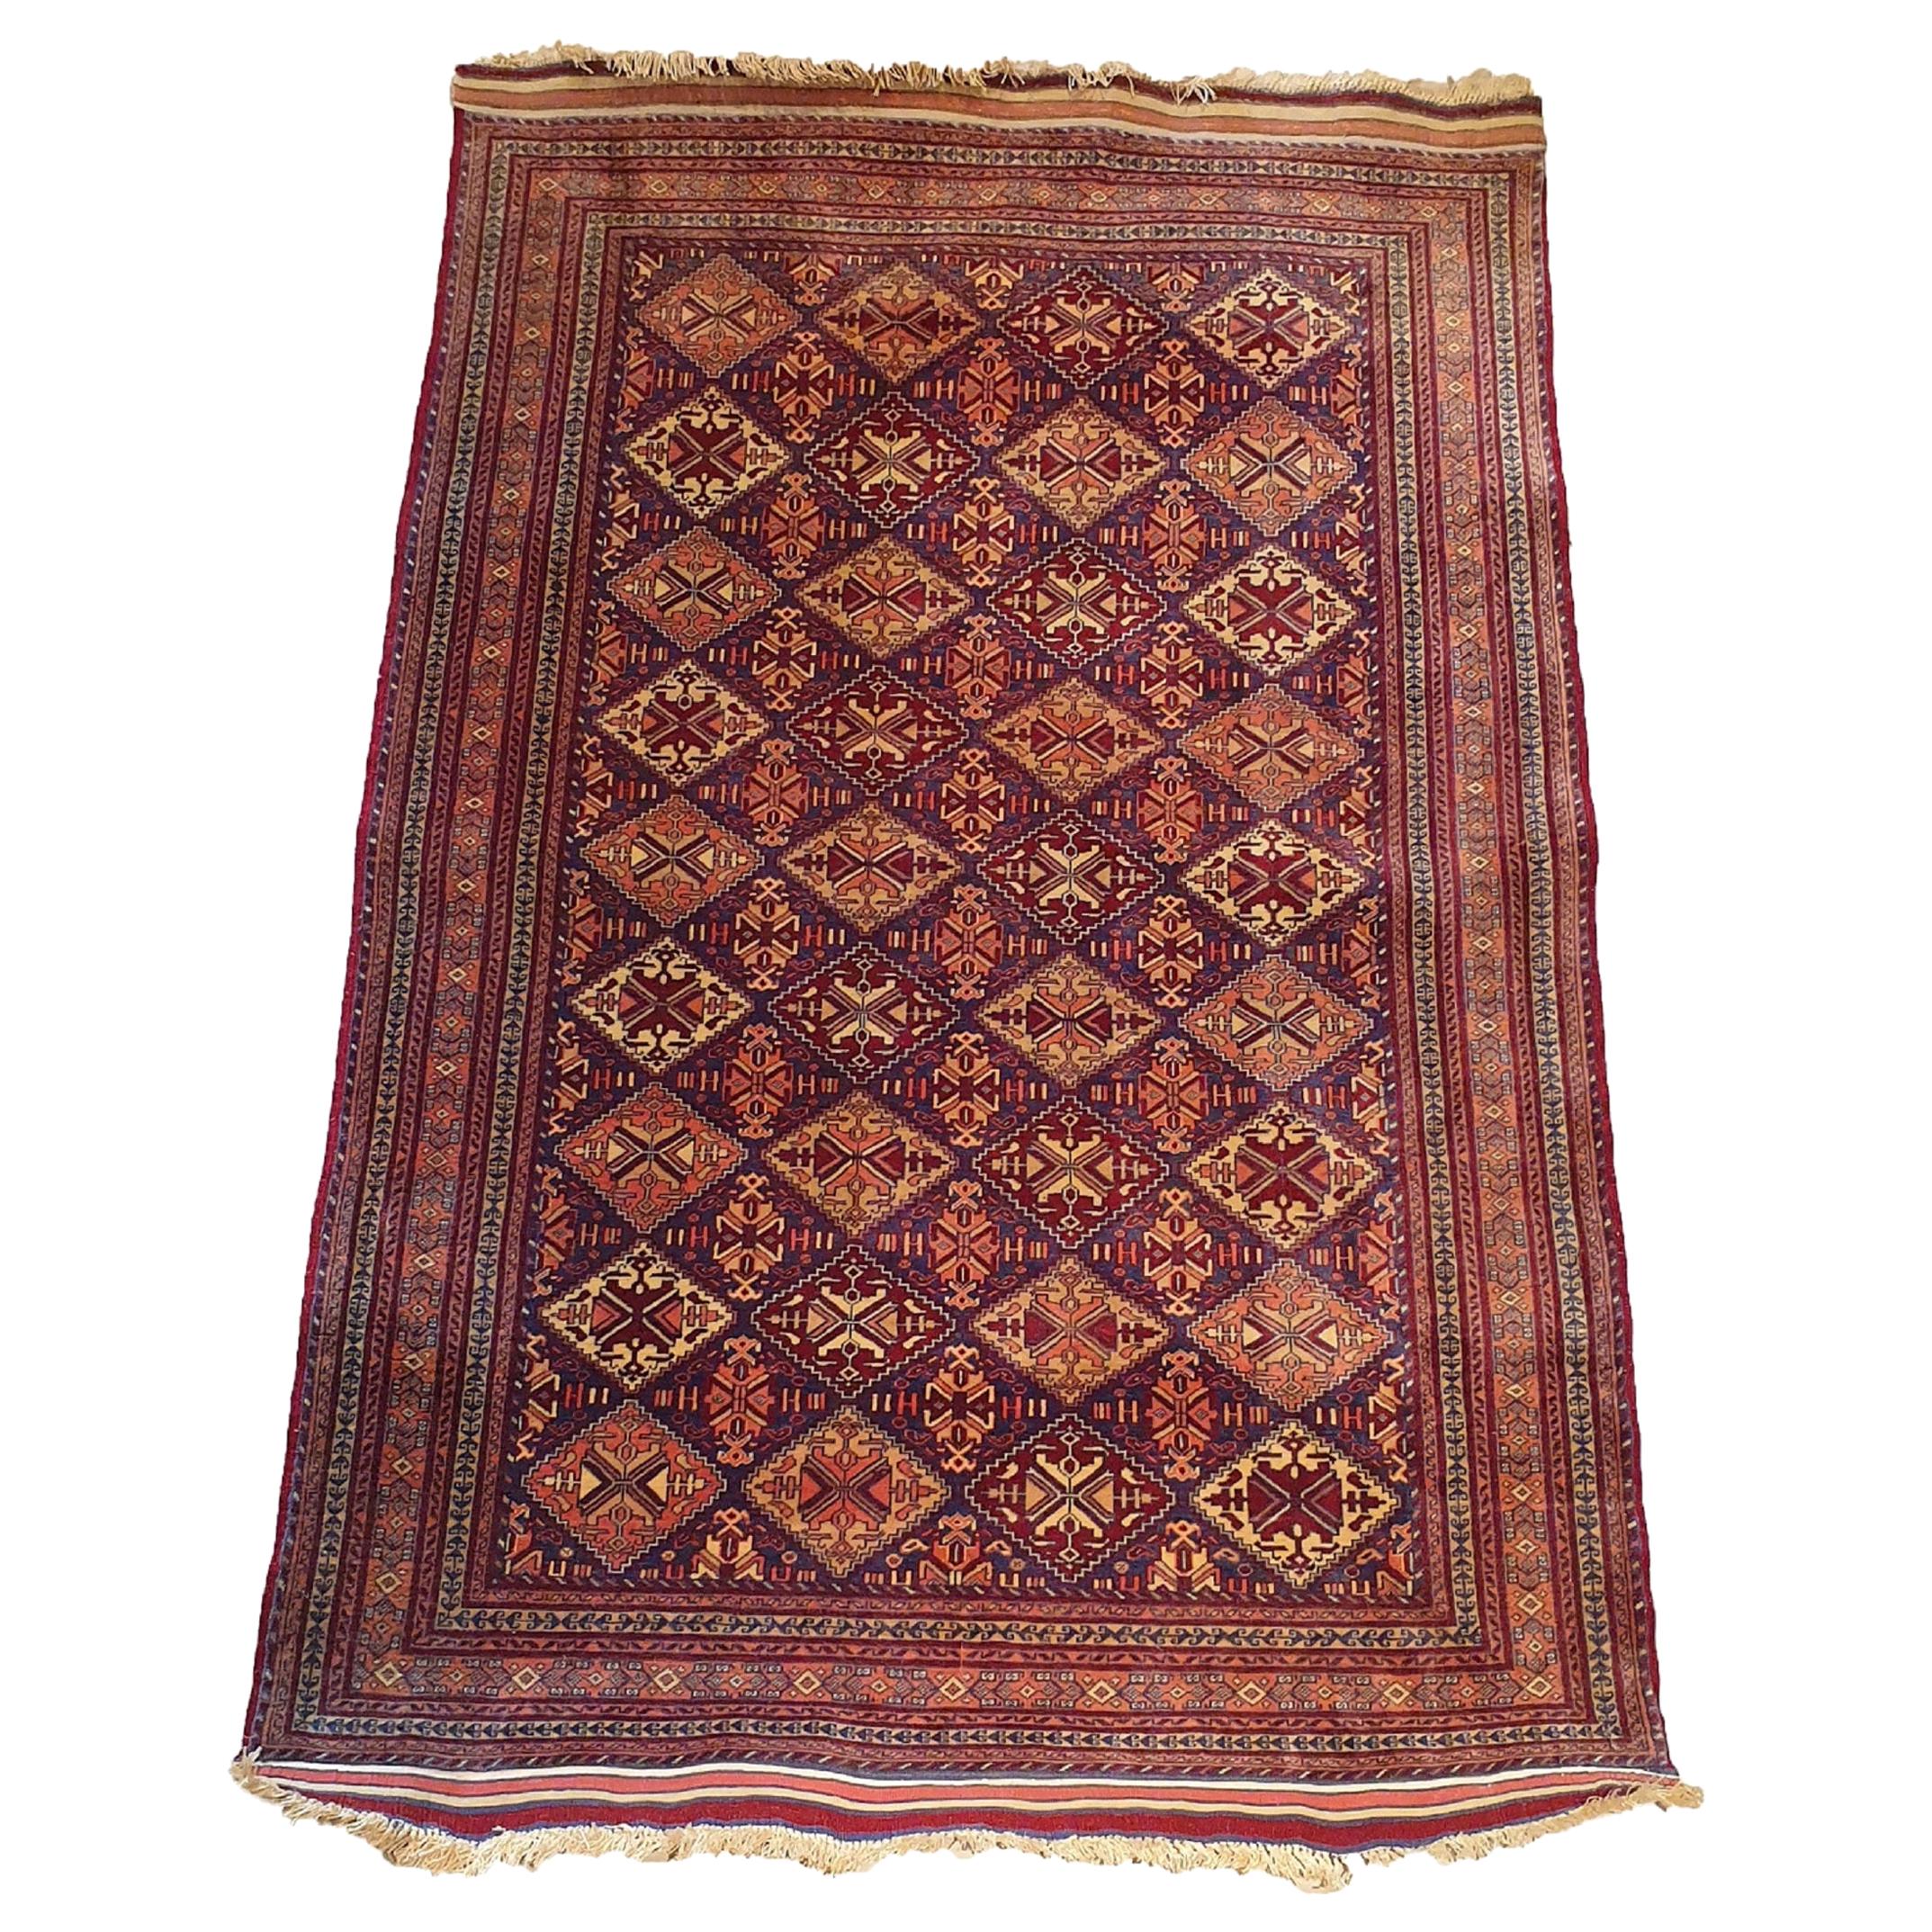 739 - Schöner türkischer Bukhara-Teppich aus dem 20. Jahrhundert